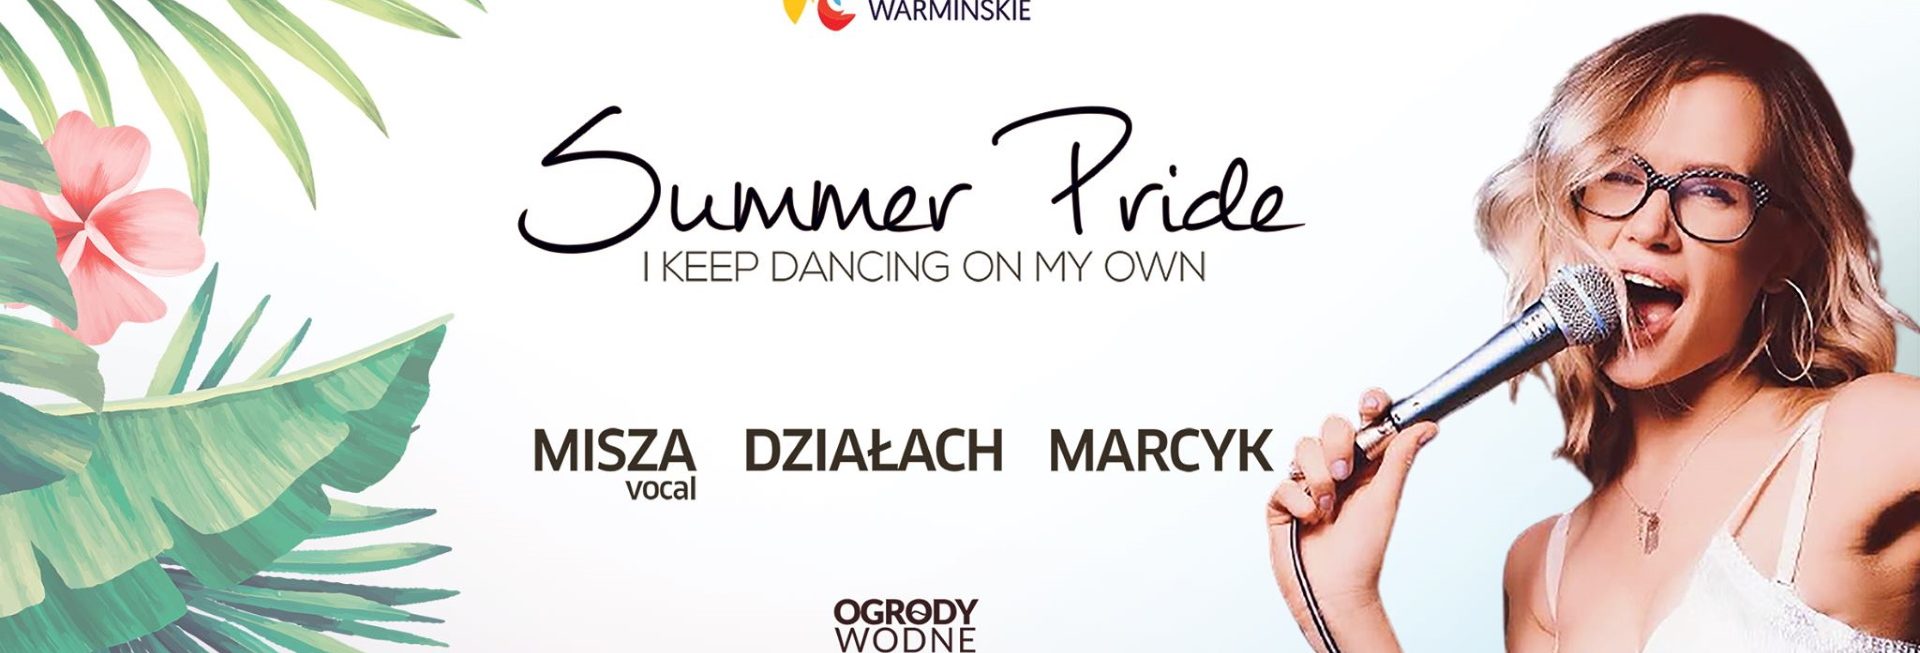 Plakat zapraszający do Term w Lidzbarku Warmińskim na otwarcie sezonu 2021 - Summer PRIDE Otwarcie sezonu 2021 w Ogrodach Wodnych - Termy Warmińskie. Na plakacie napisy, a po prawej stronie plakatu śpiewająca piosenkarka.  